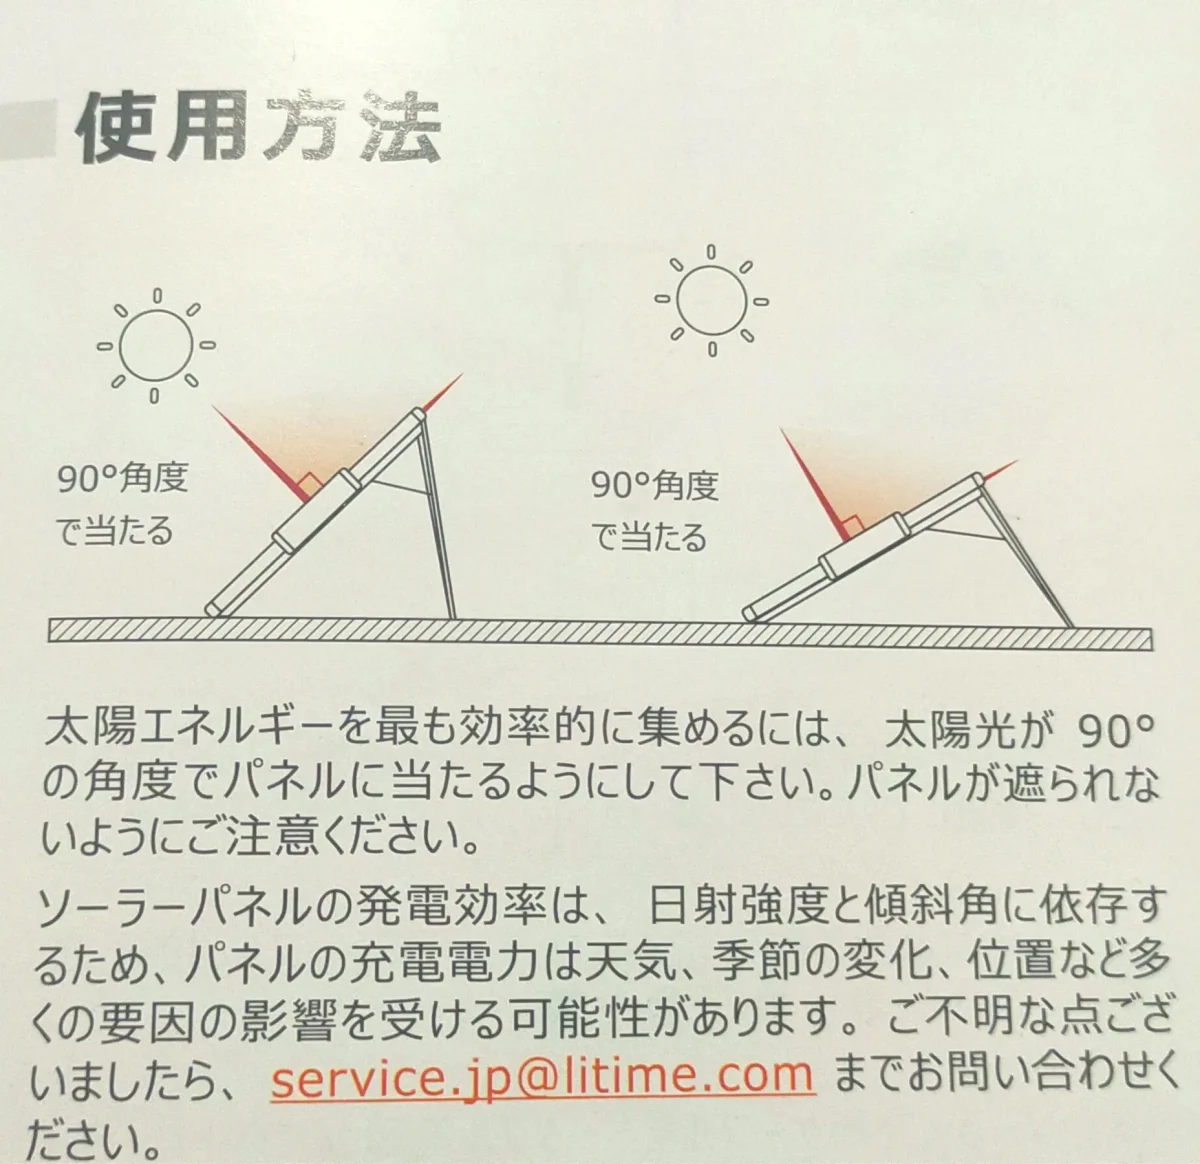 LiTime折りたたみソーラーパネル使用方法